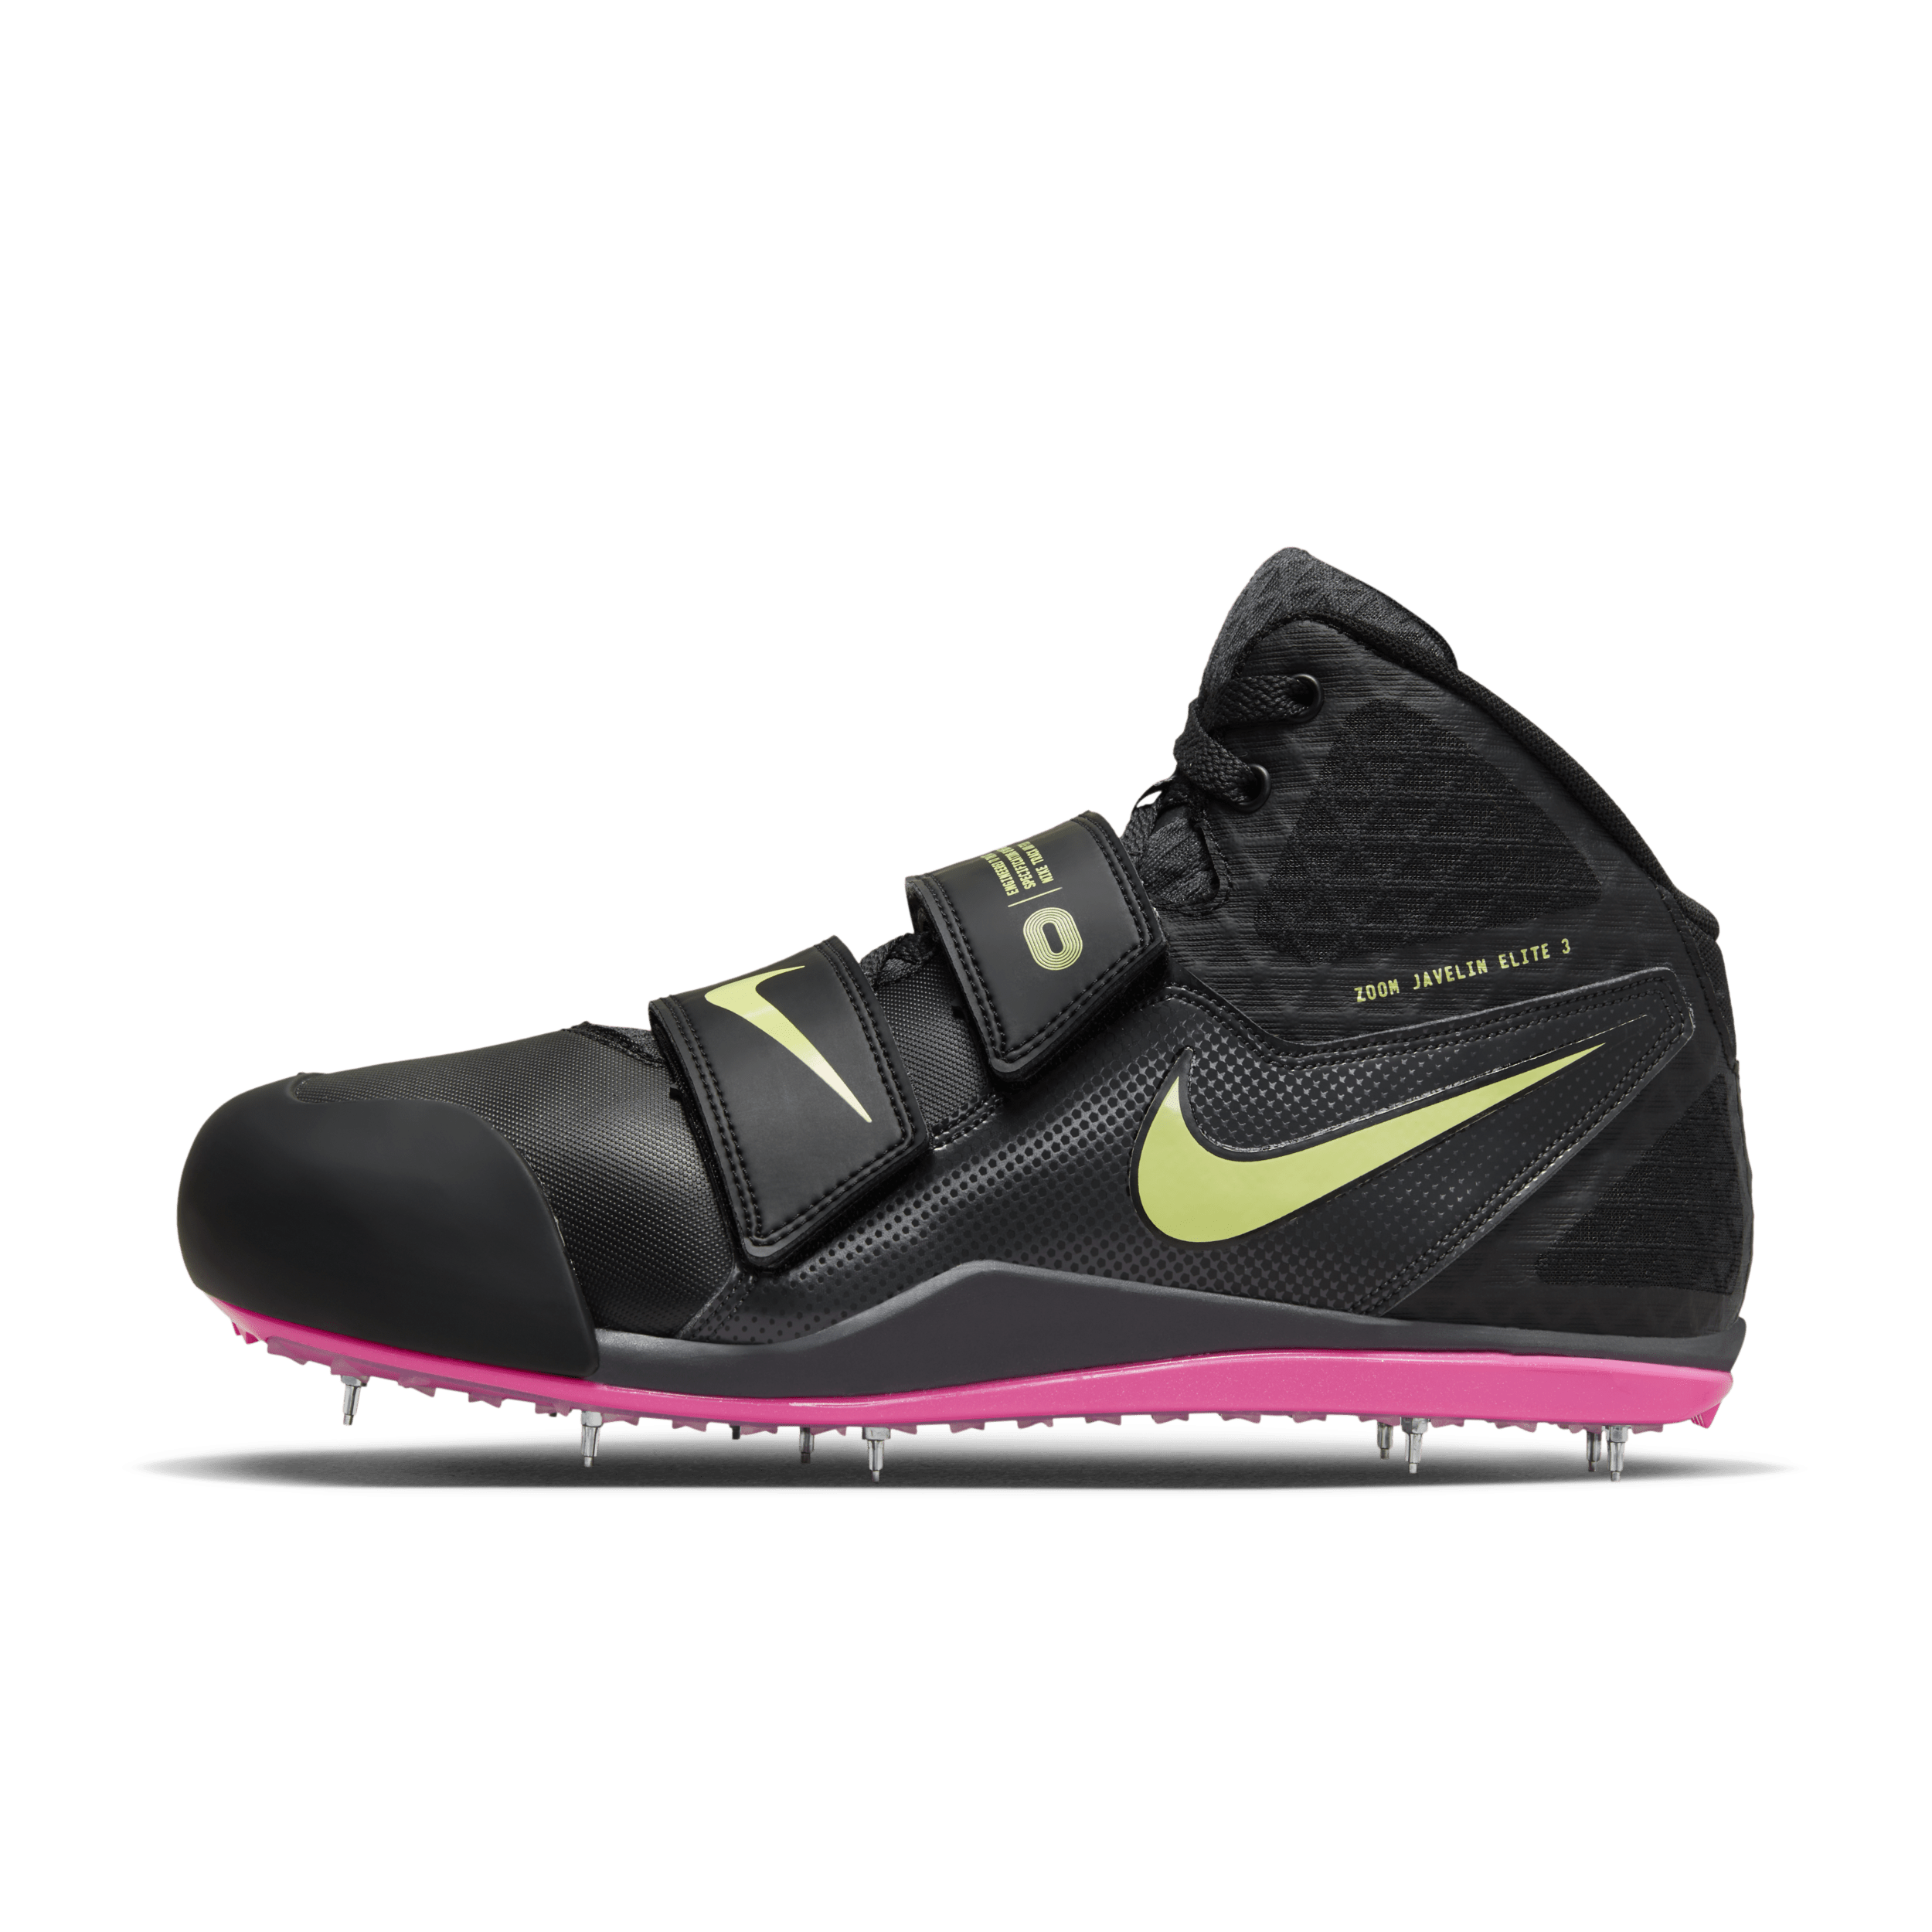 Nike Zoom Javelin Elite 3 Track and Field throwing spikes - Zwart